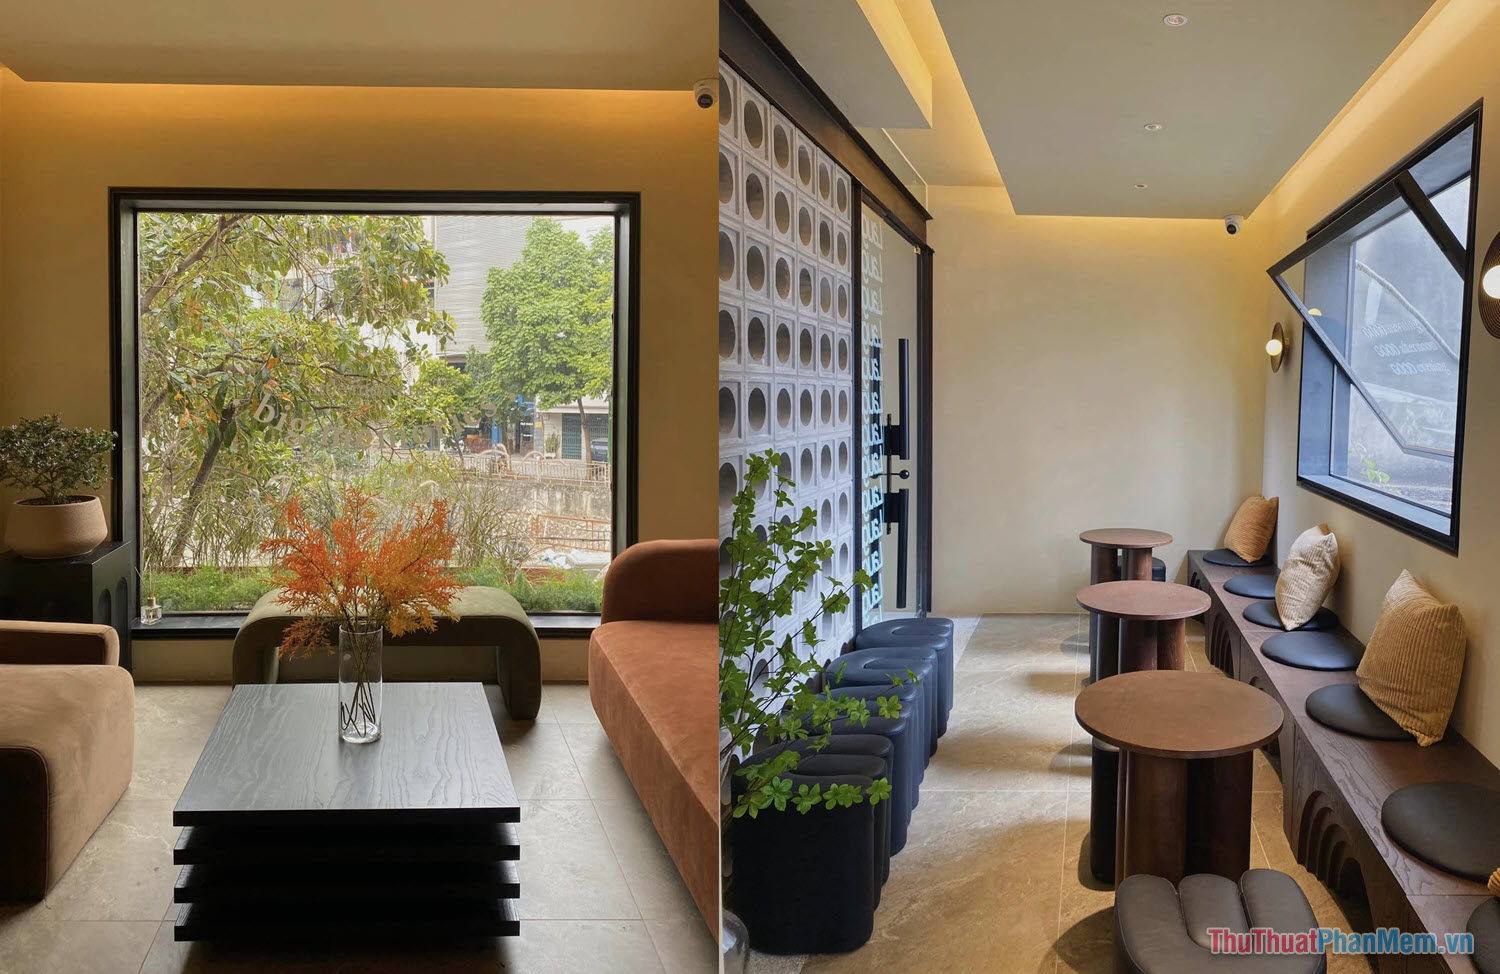 MOMENT OF LIFE – Quán cafe phòng riêng ở Hà Nội